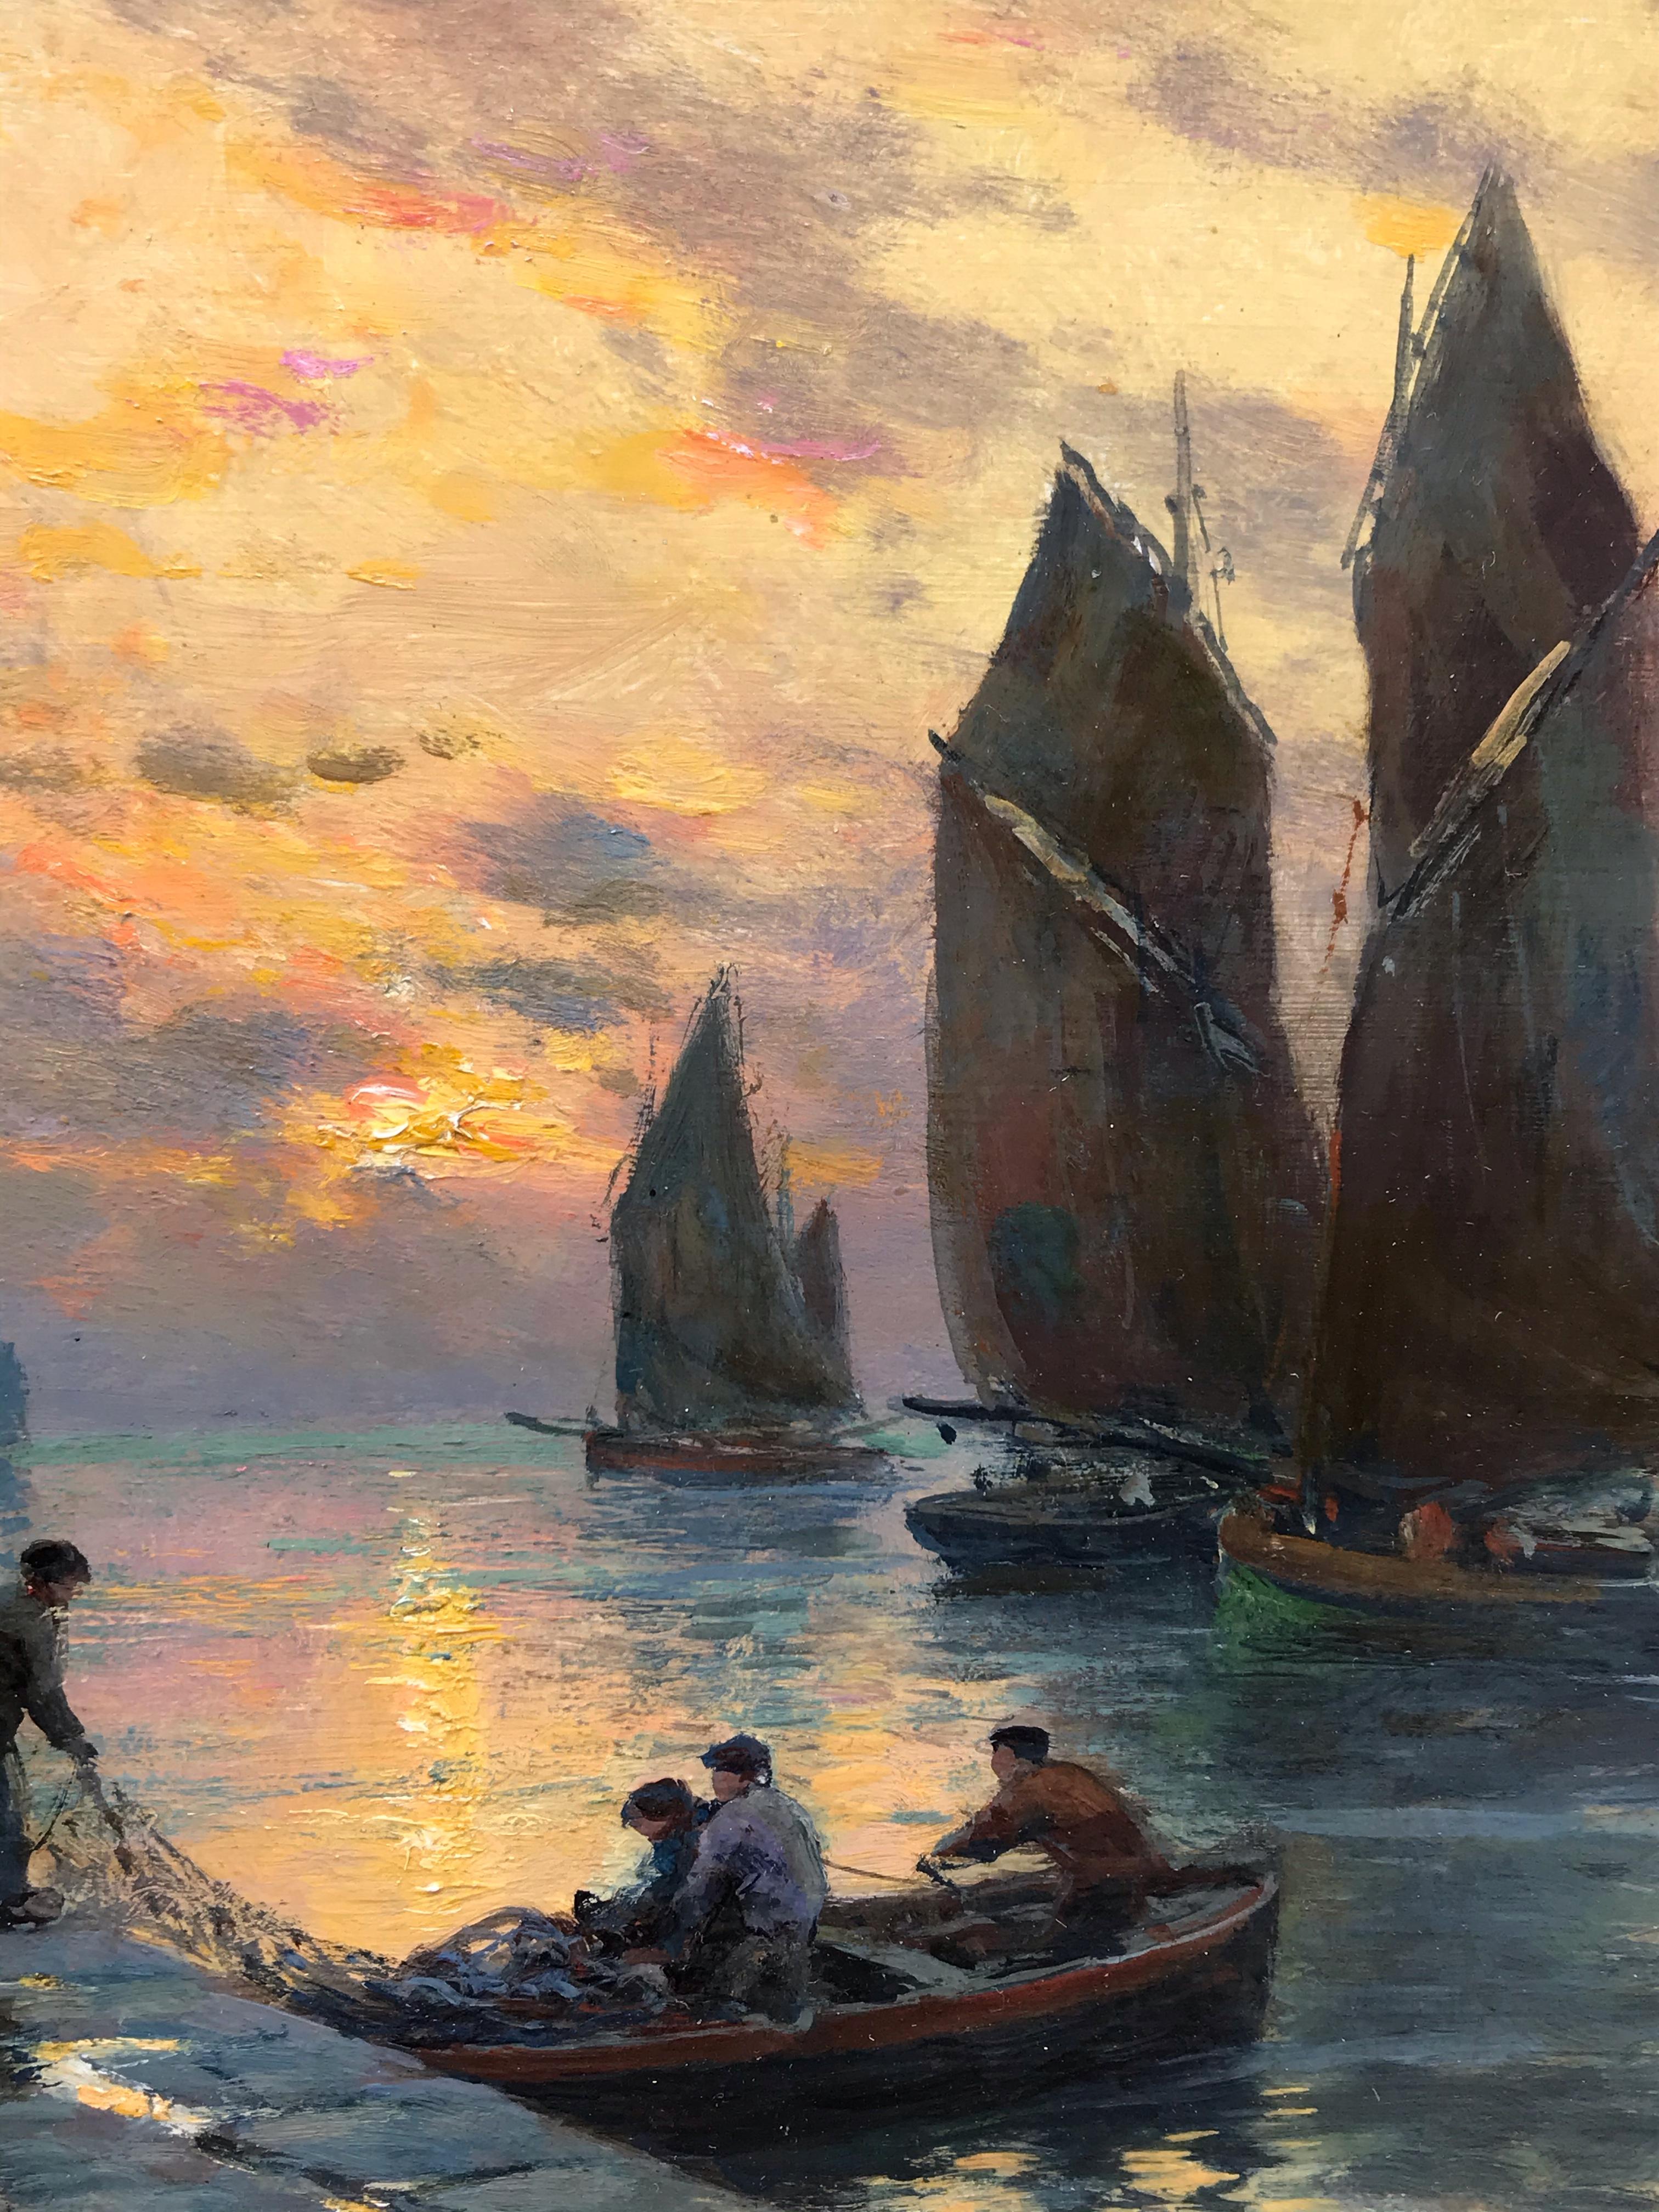 Port de pêche au coucher du soleil - Peinture du 19ème siècle 1